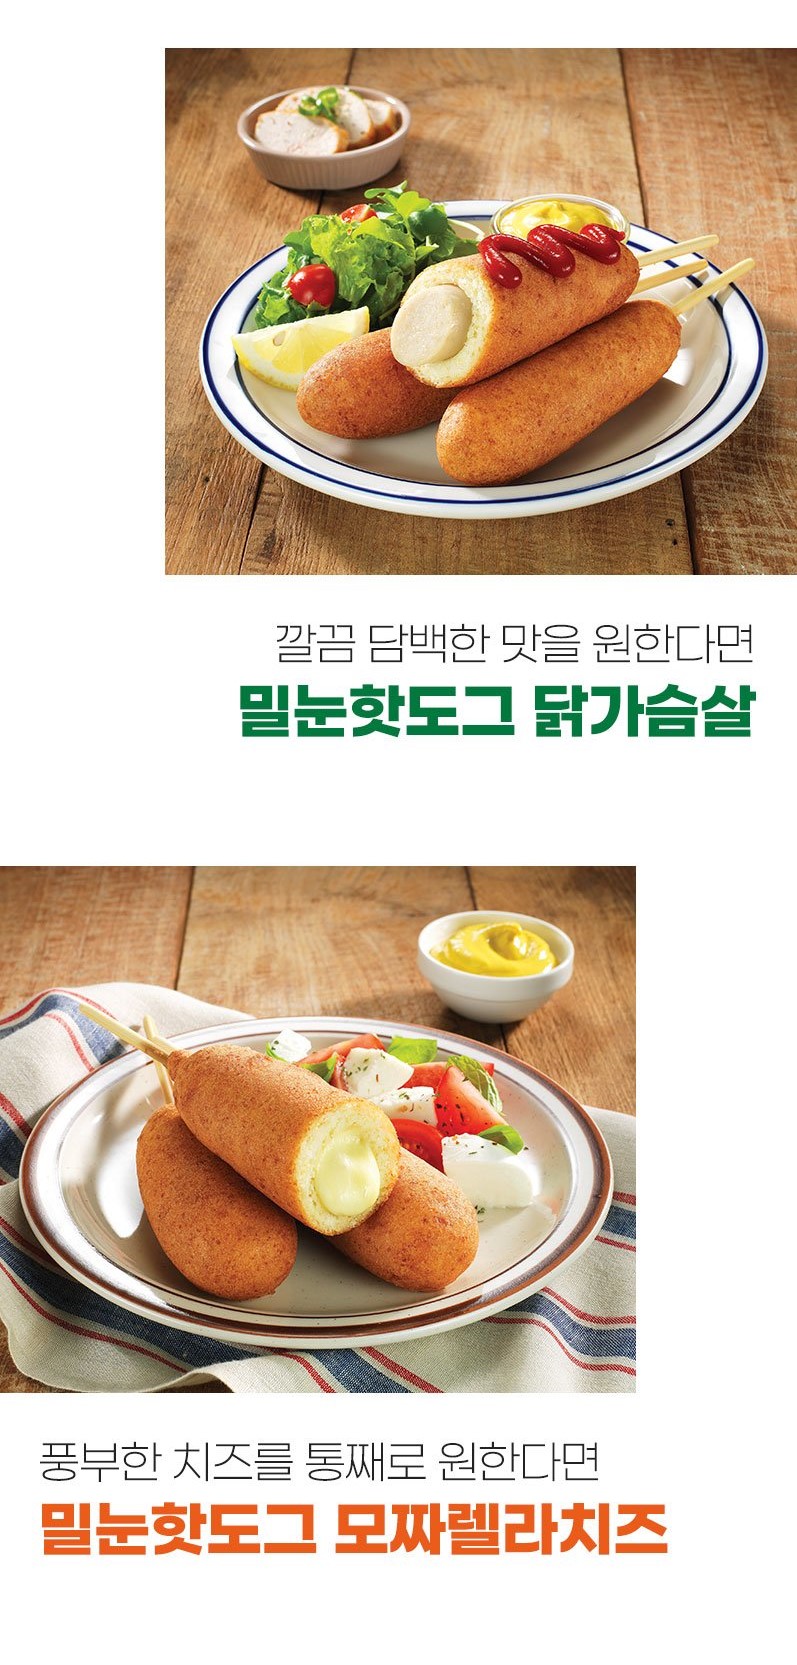 韓國食品-[올반] 곰표밀눈핫도그 [플레인] 80g